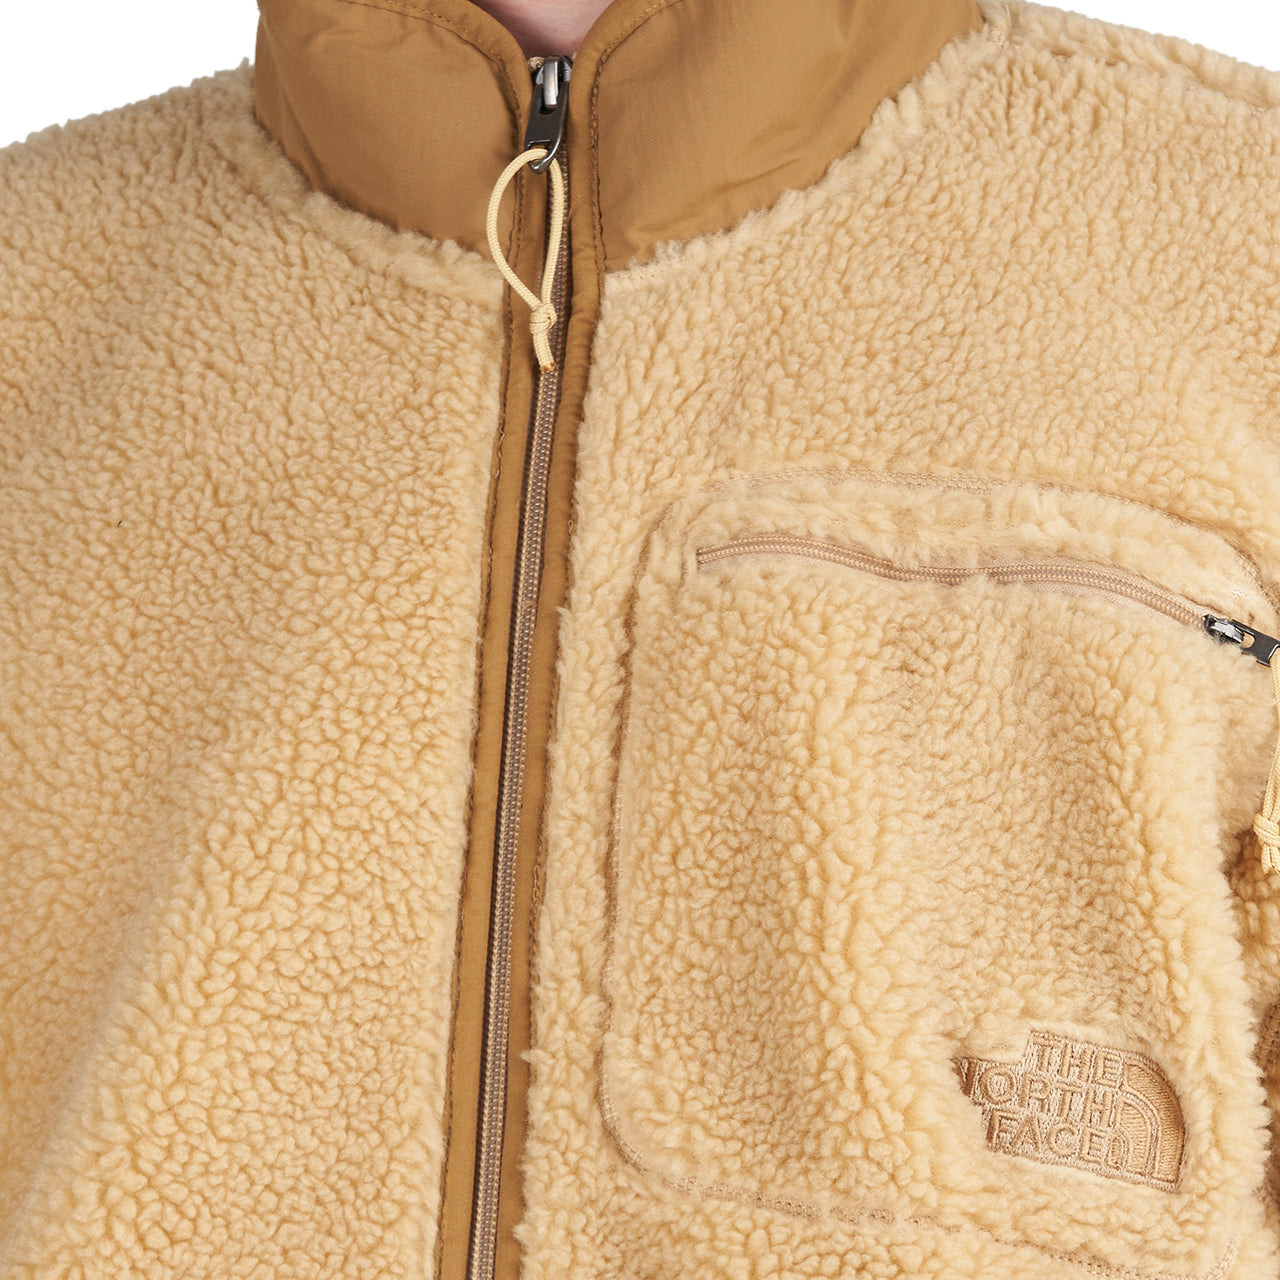 The North Face Extreme Pile Full-Zip Fleece Jacket (Khaki)  - Cheap Juzsports Jordan Outlet